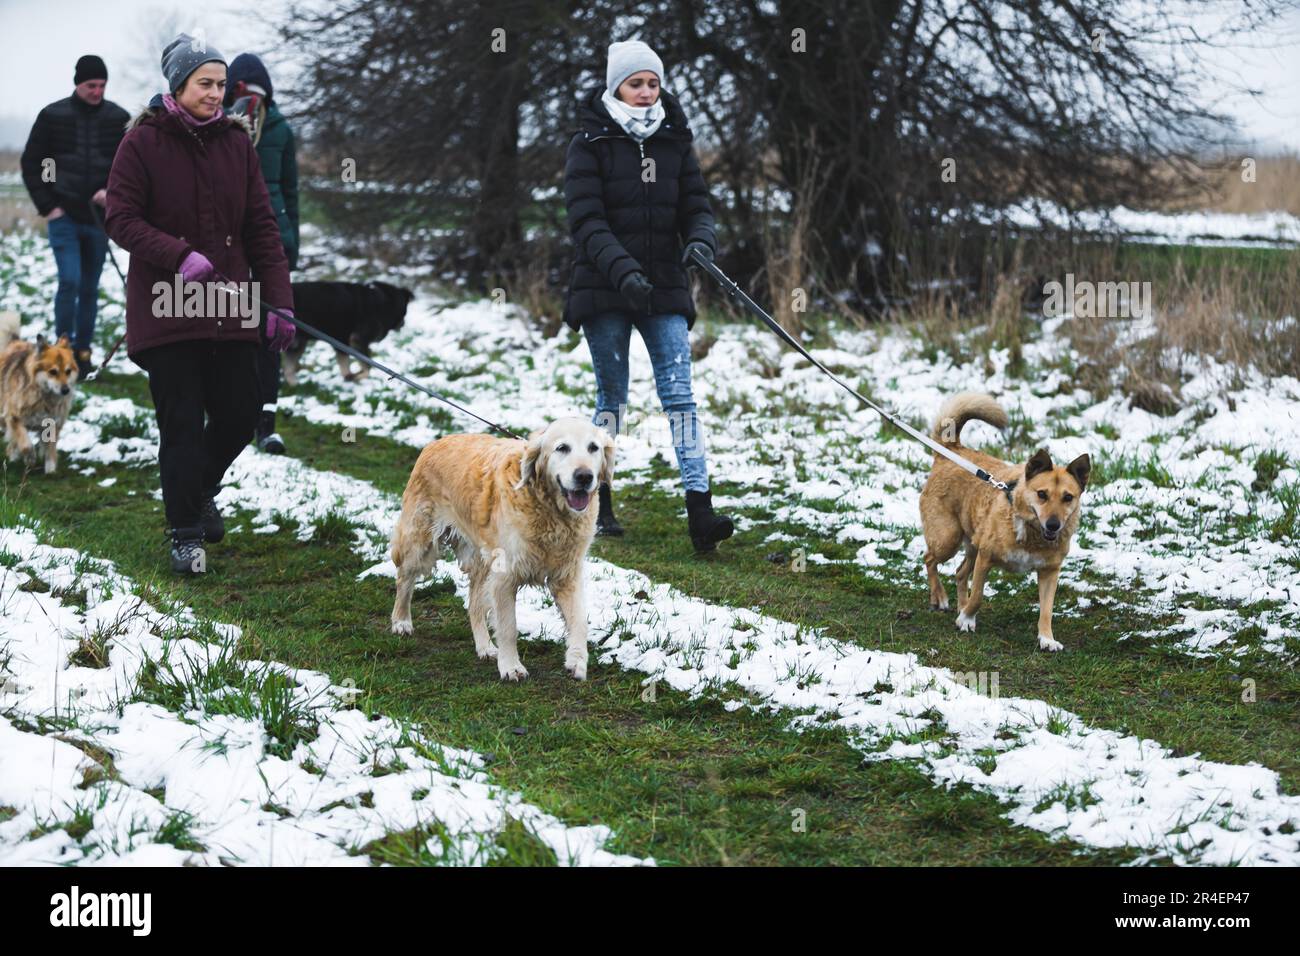 Mit hübschen Hunden im Schnee spazieren gehen, Freiwillige kümmern sich um  Hunde. Hochwertiges Foto Stockfotografie - Alamy